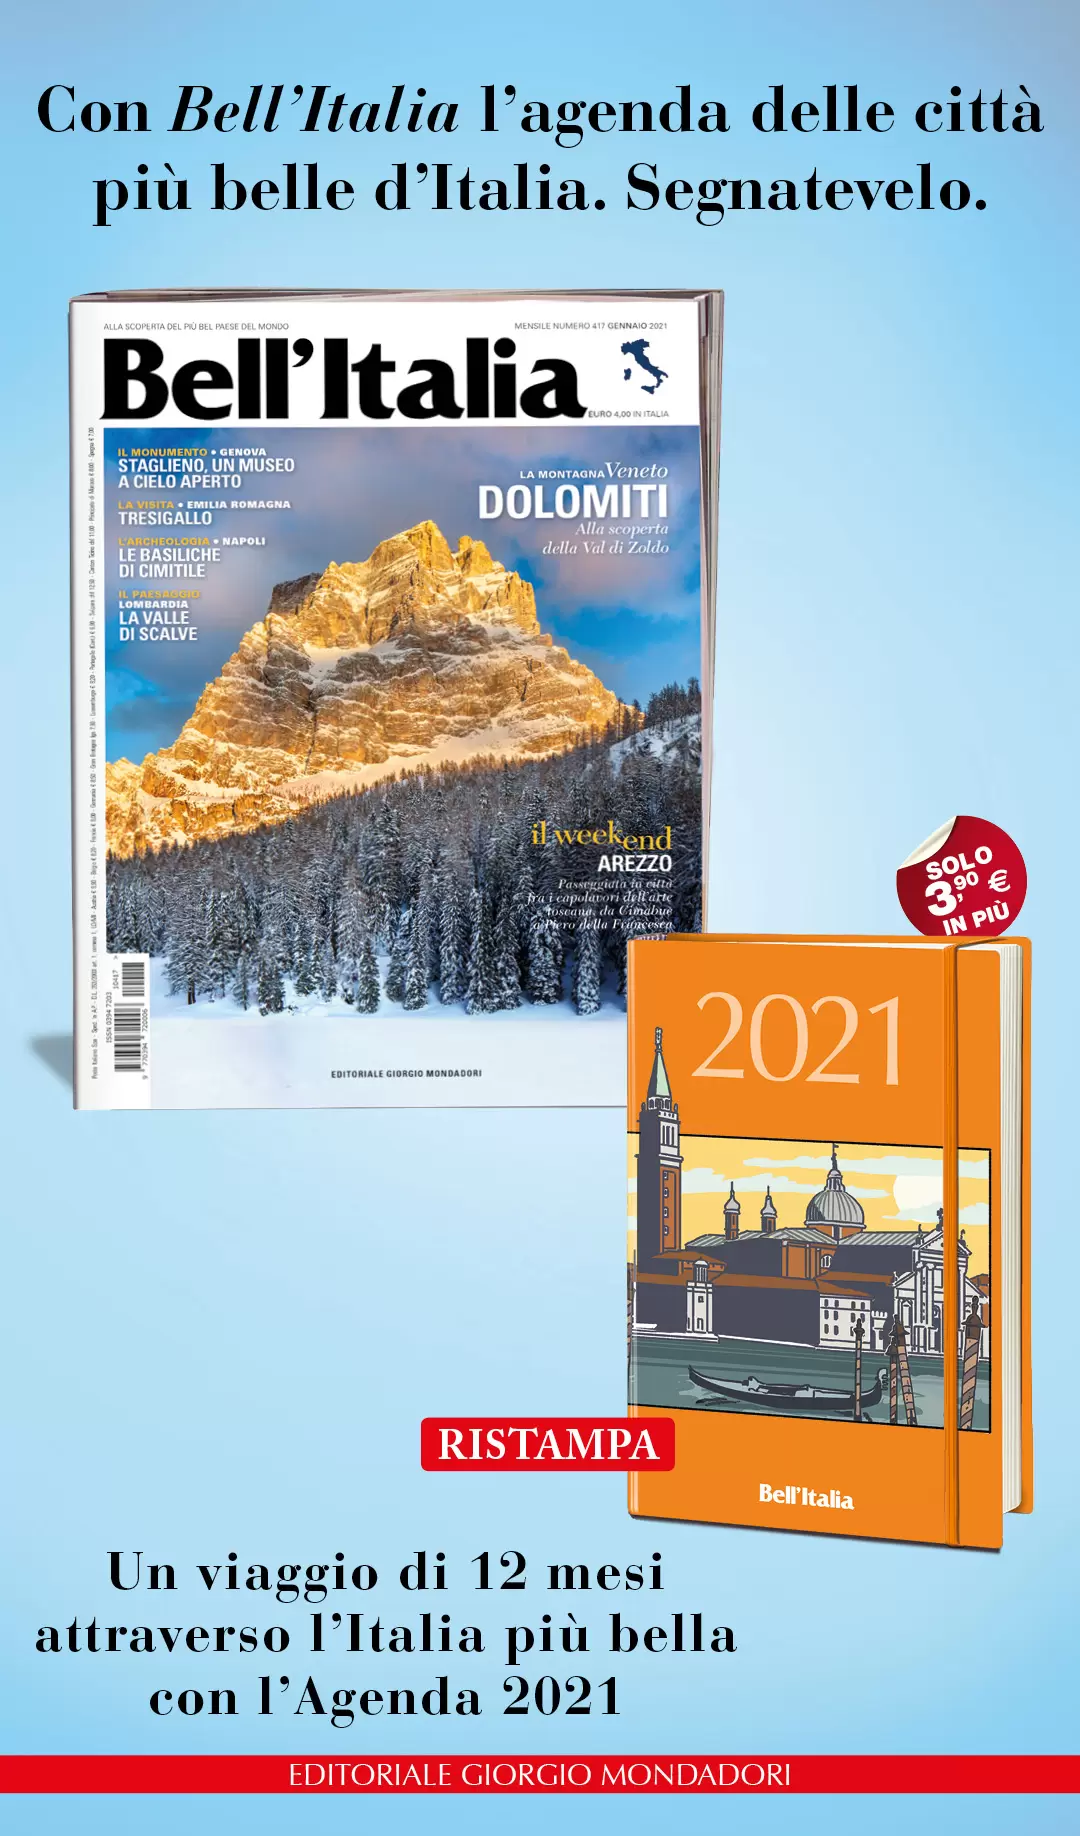 Con Bell’Italia l’agenda delle città più belle d’Italia. Segnatevelo.